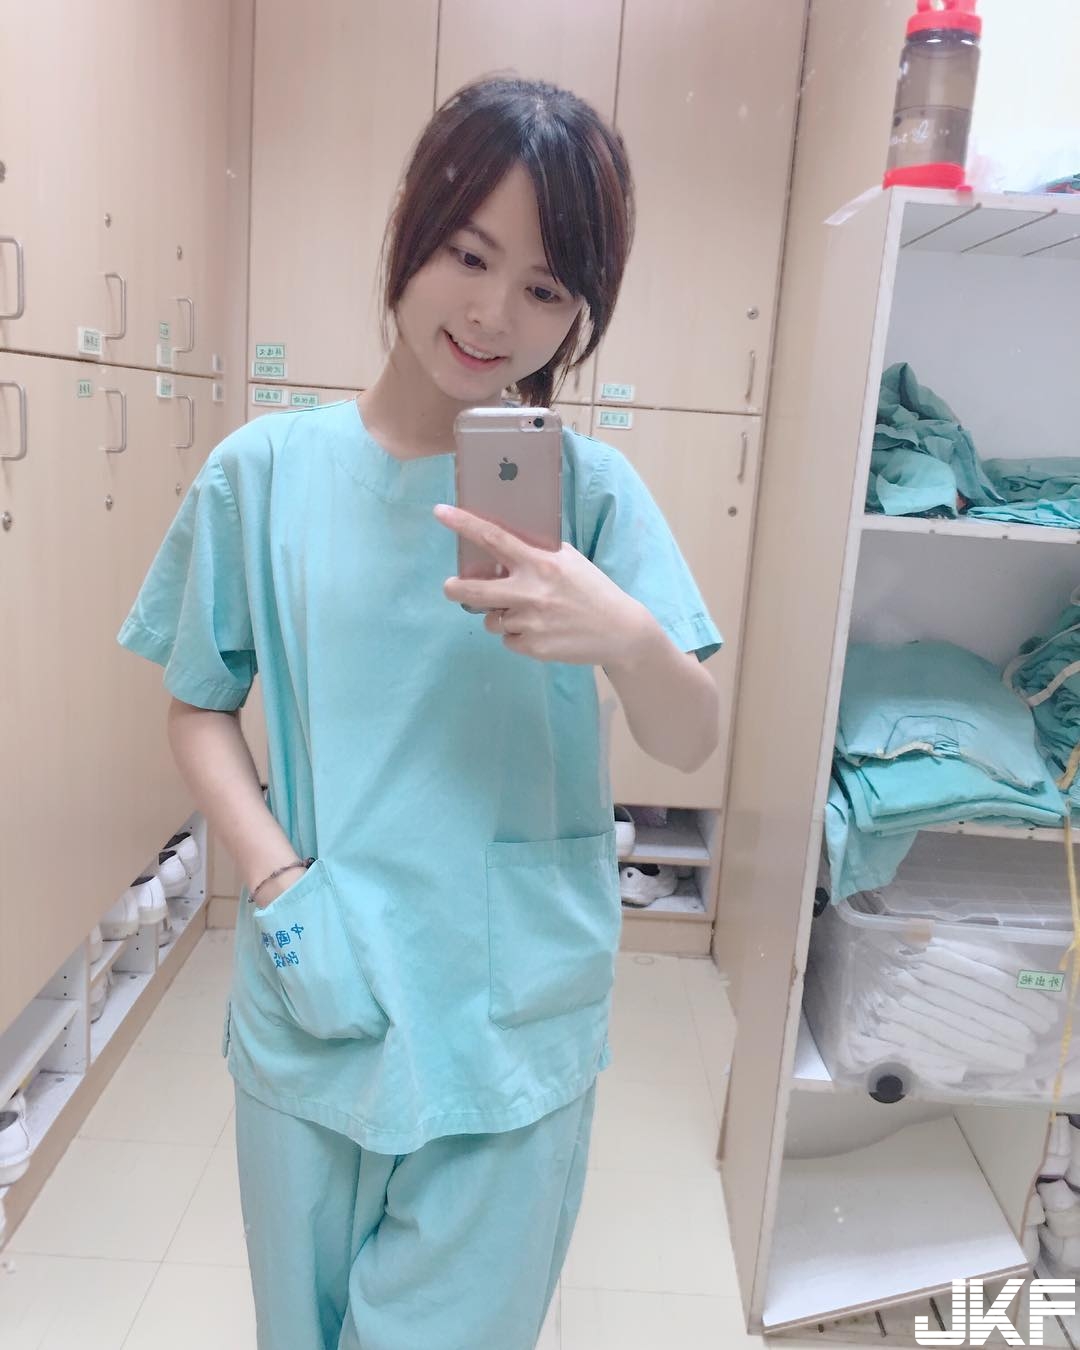 好兇啊！中國醫「大奶護理師」氣質鄰家女孩，制服下竟隱藏「極好身材」！